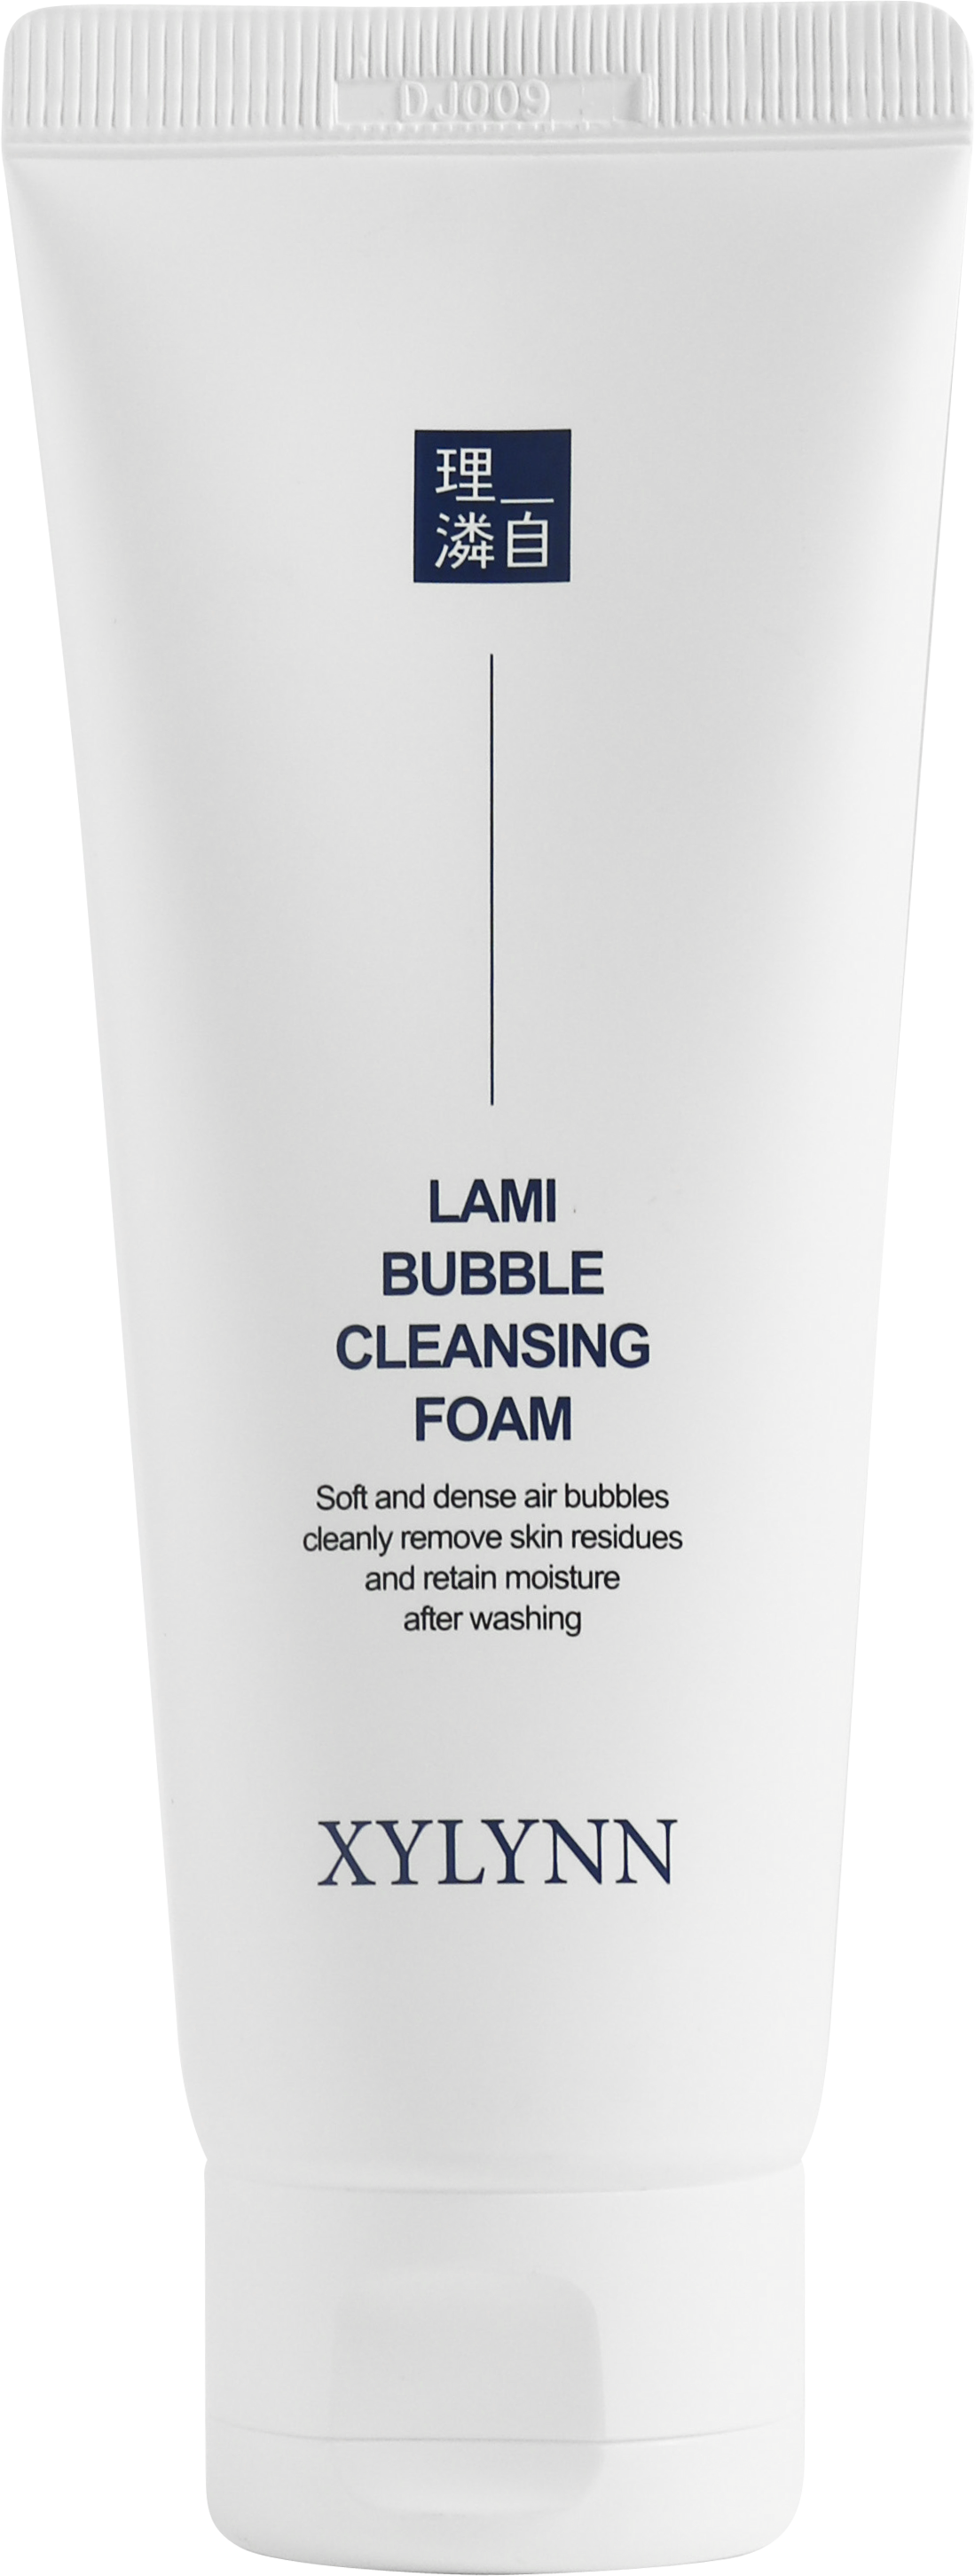 XYLYNN Lami Bubble Cleasing Foam